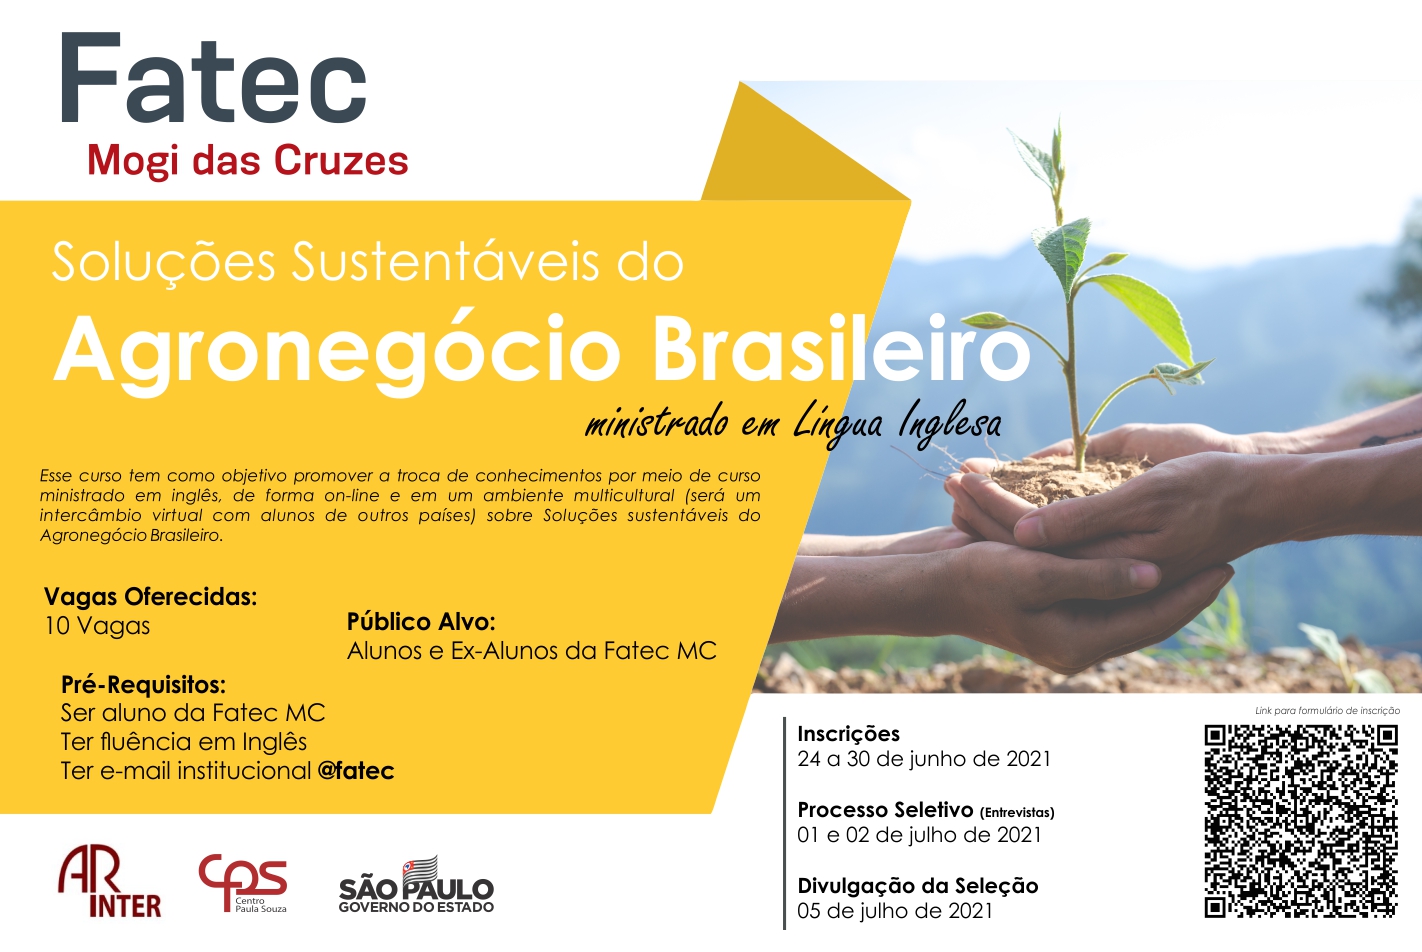 Imagem contendo informações sobre o curso Soluções Sustentáveis do Agronegócio Brasileiro